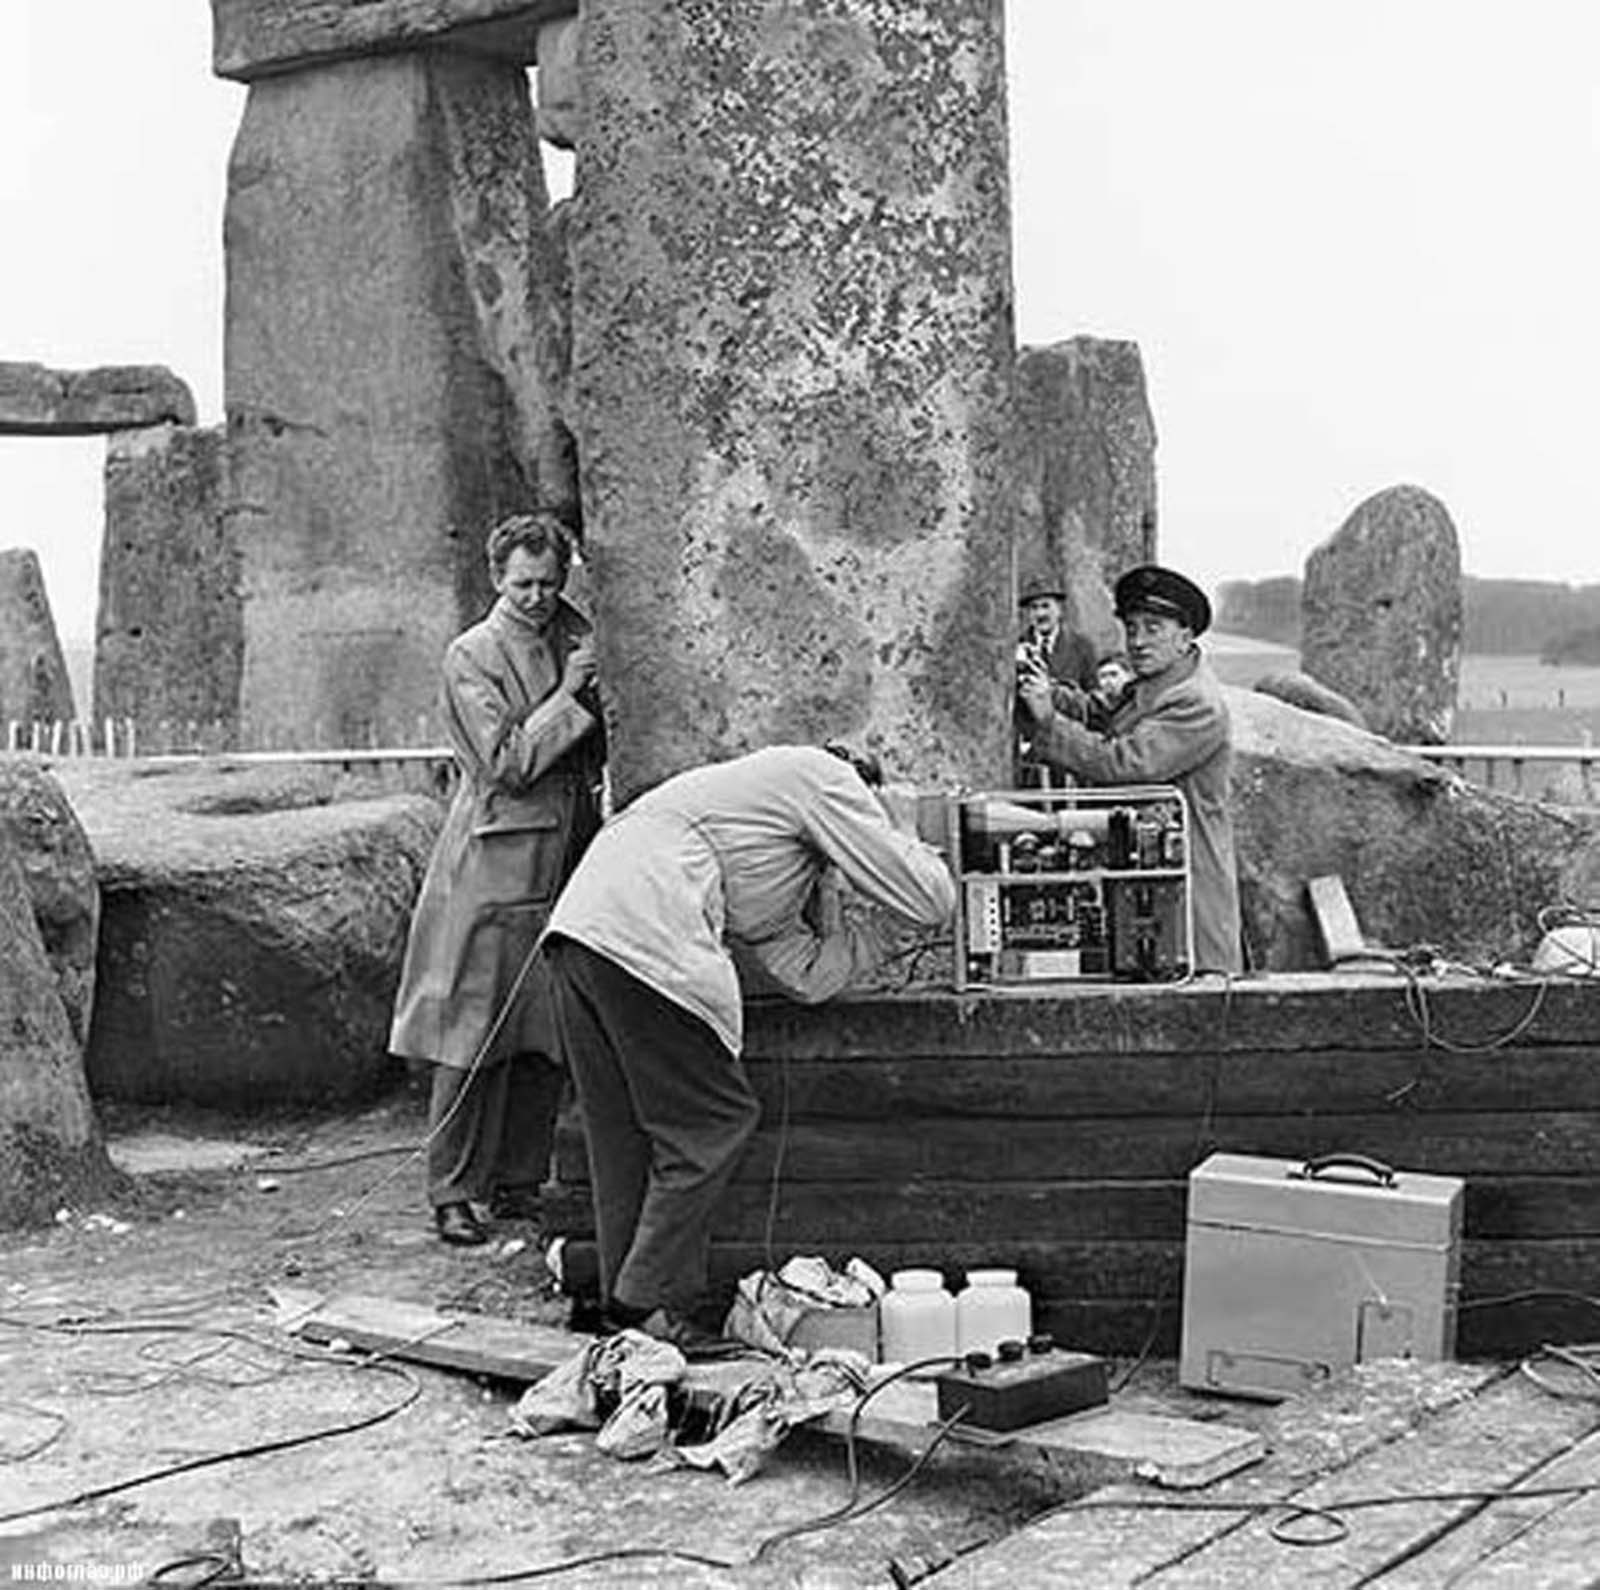 stonehenge history restoration old photographs